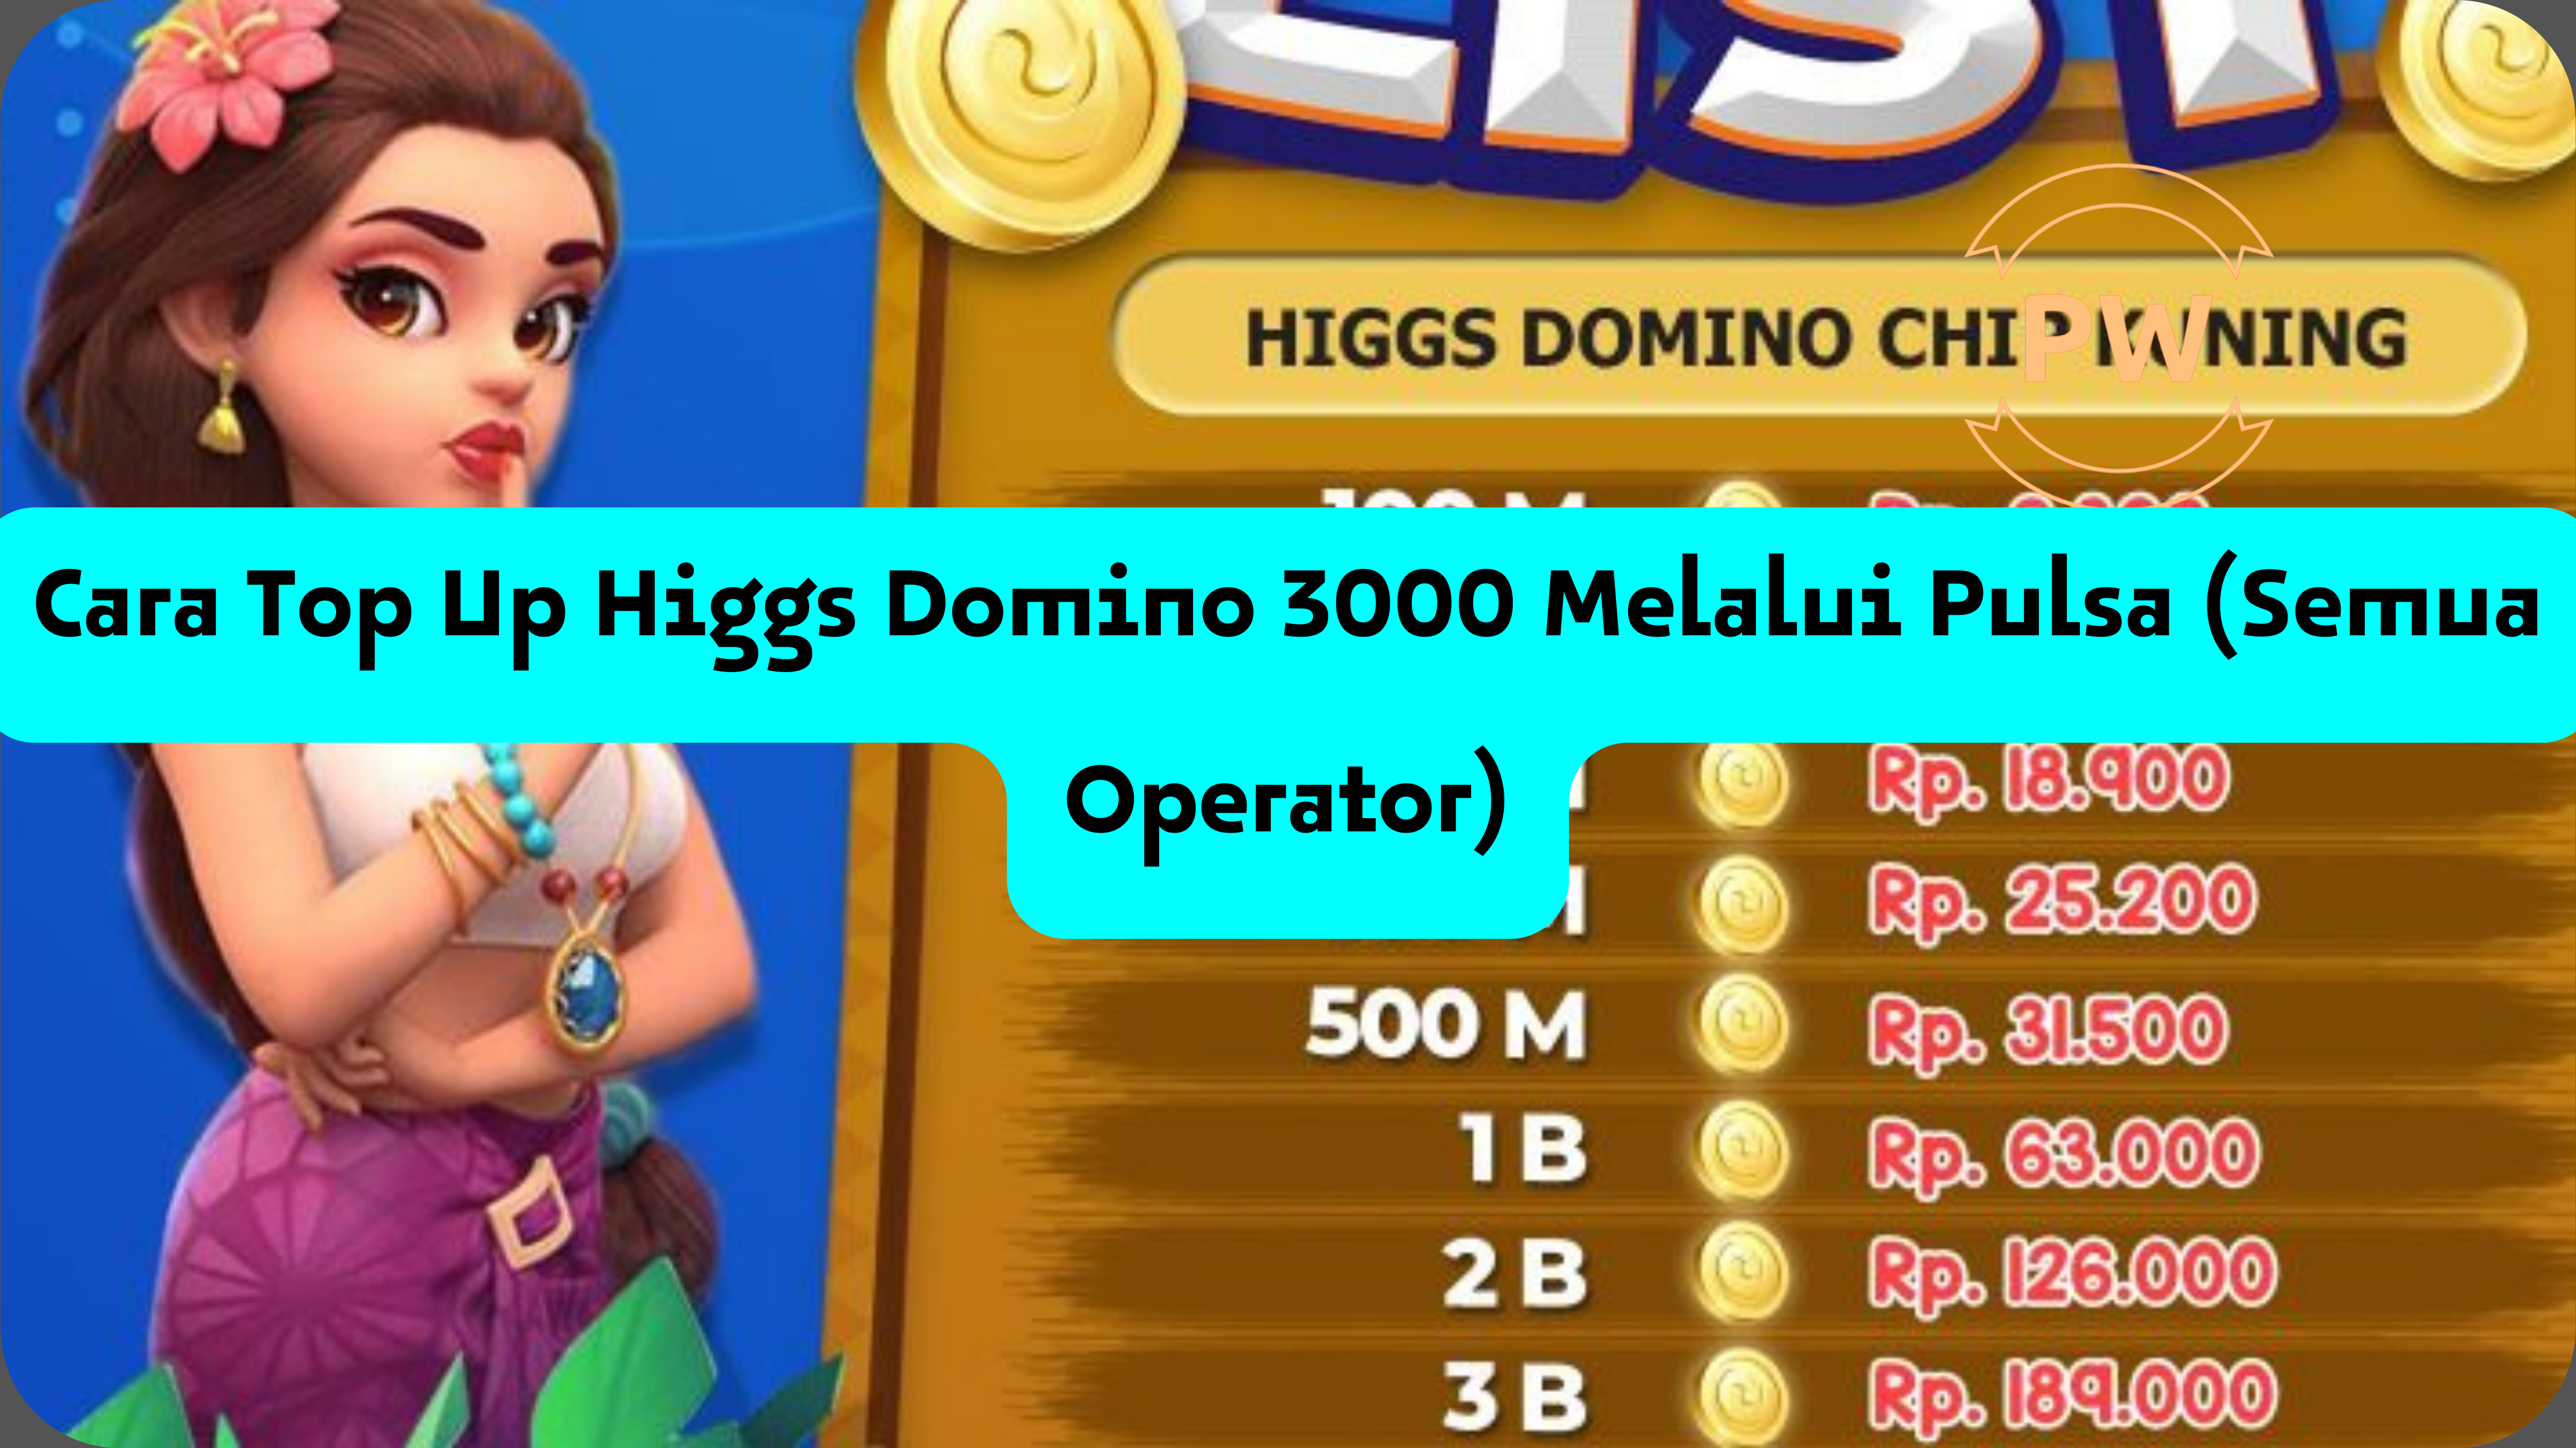 Cara Top Up Higgs Domino 3000 Melalui Pulsa (Semua Operator)